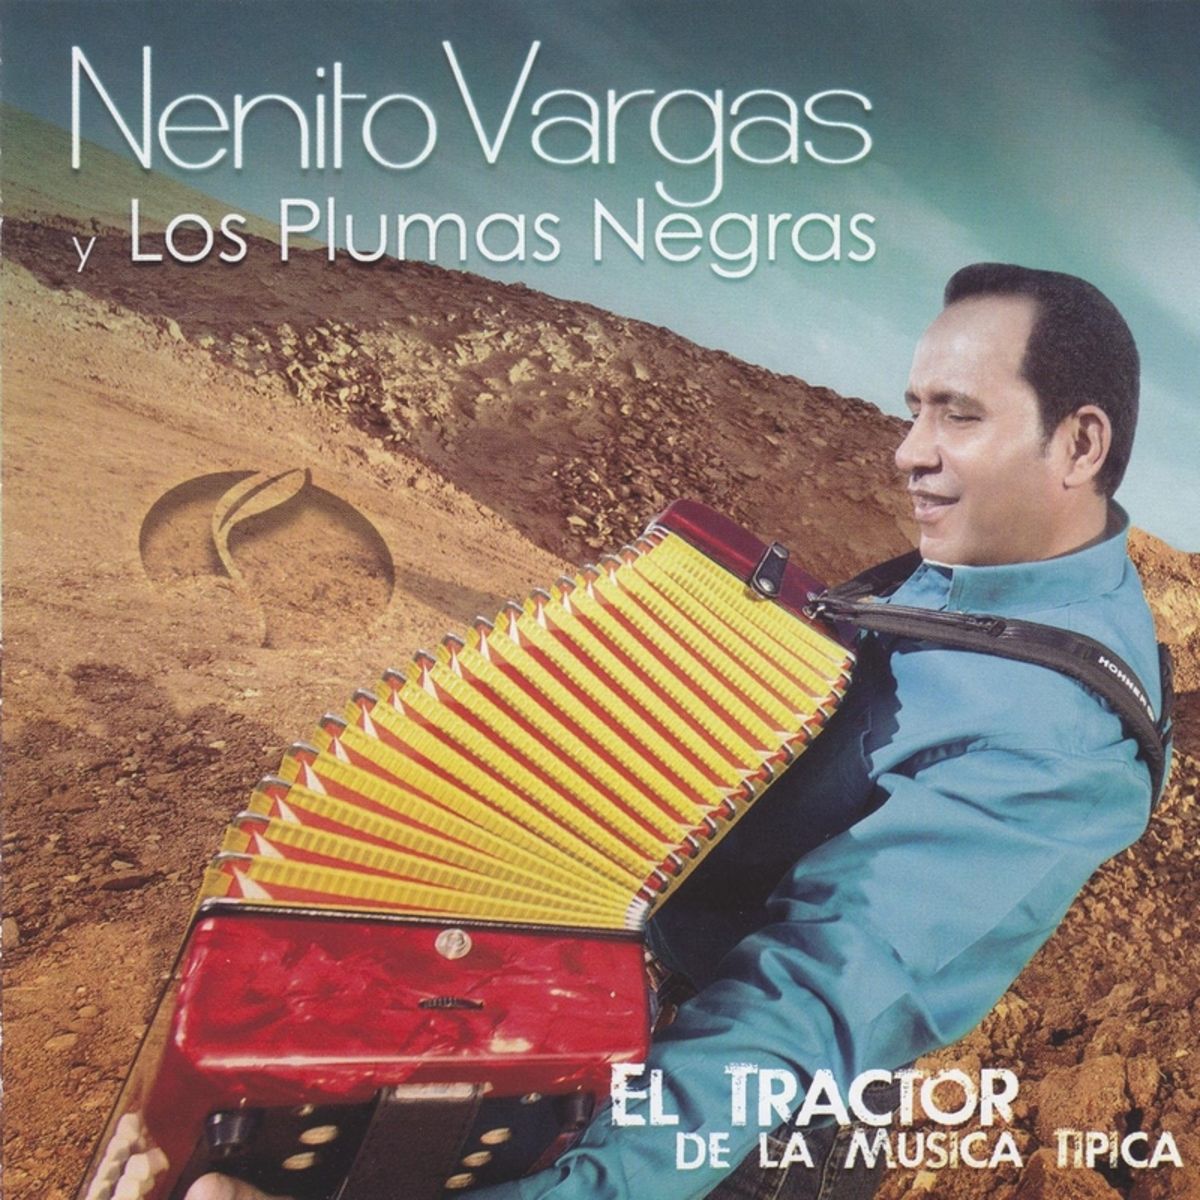 10 - Nenito Vargas y los Plumas Negras - Canto a Margarita.mp3